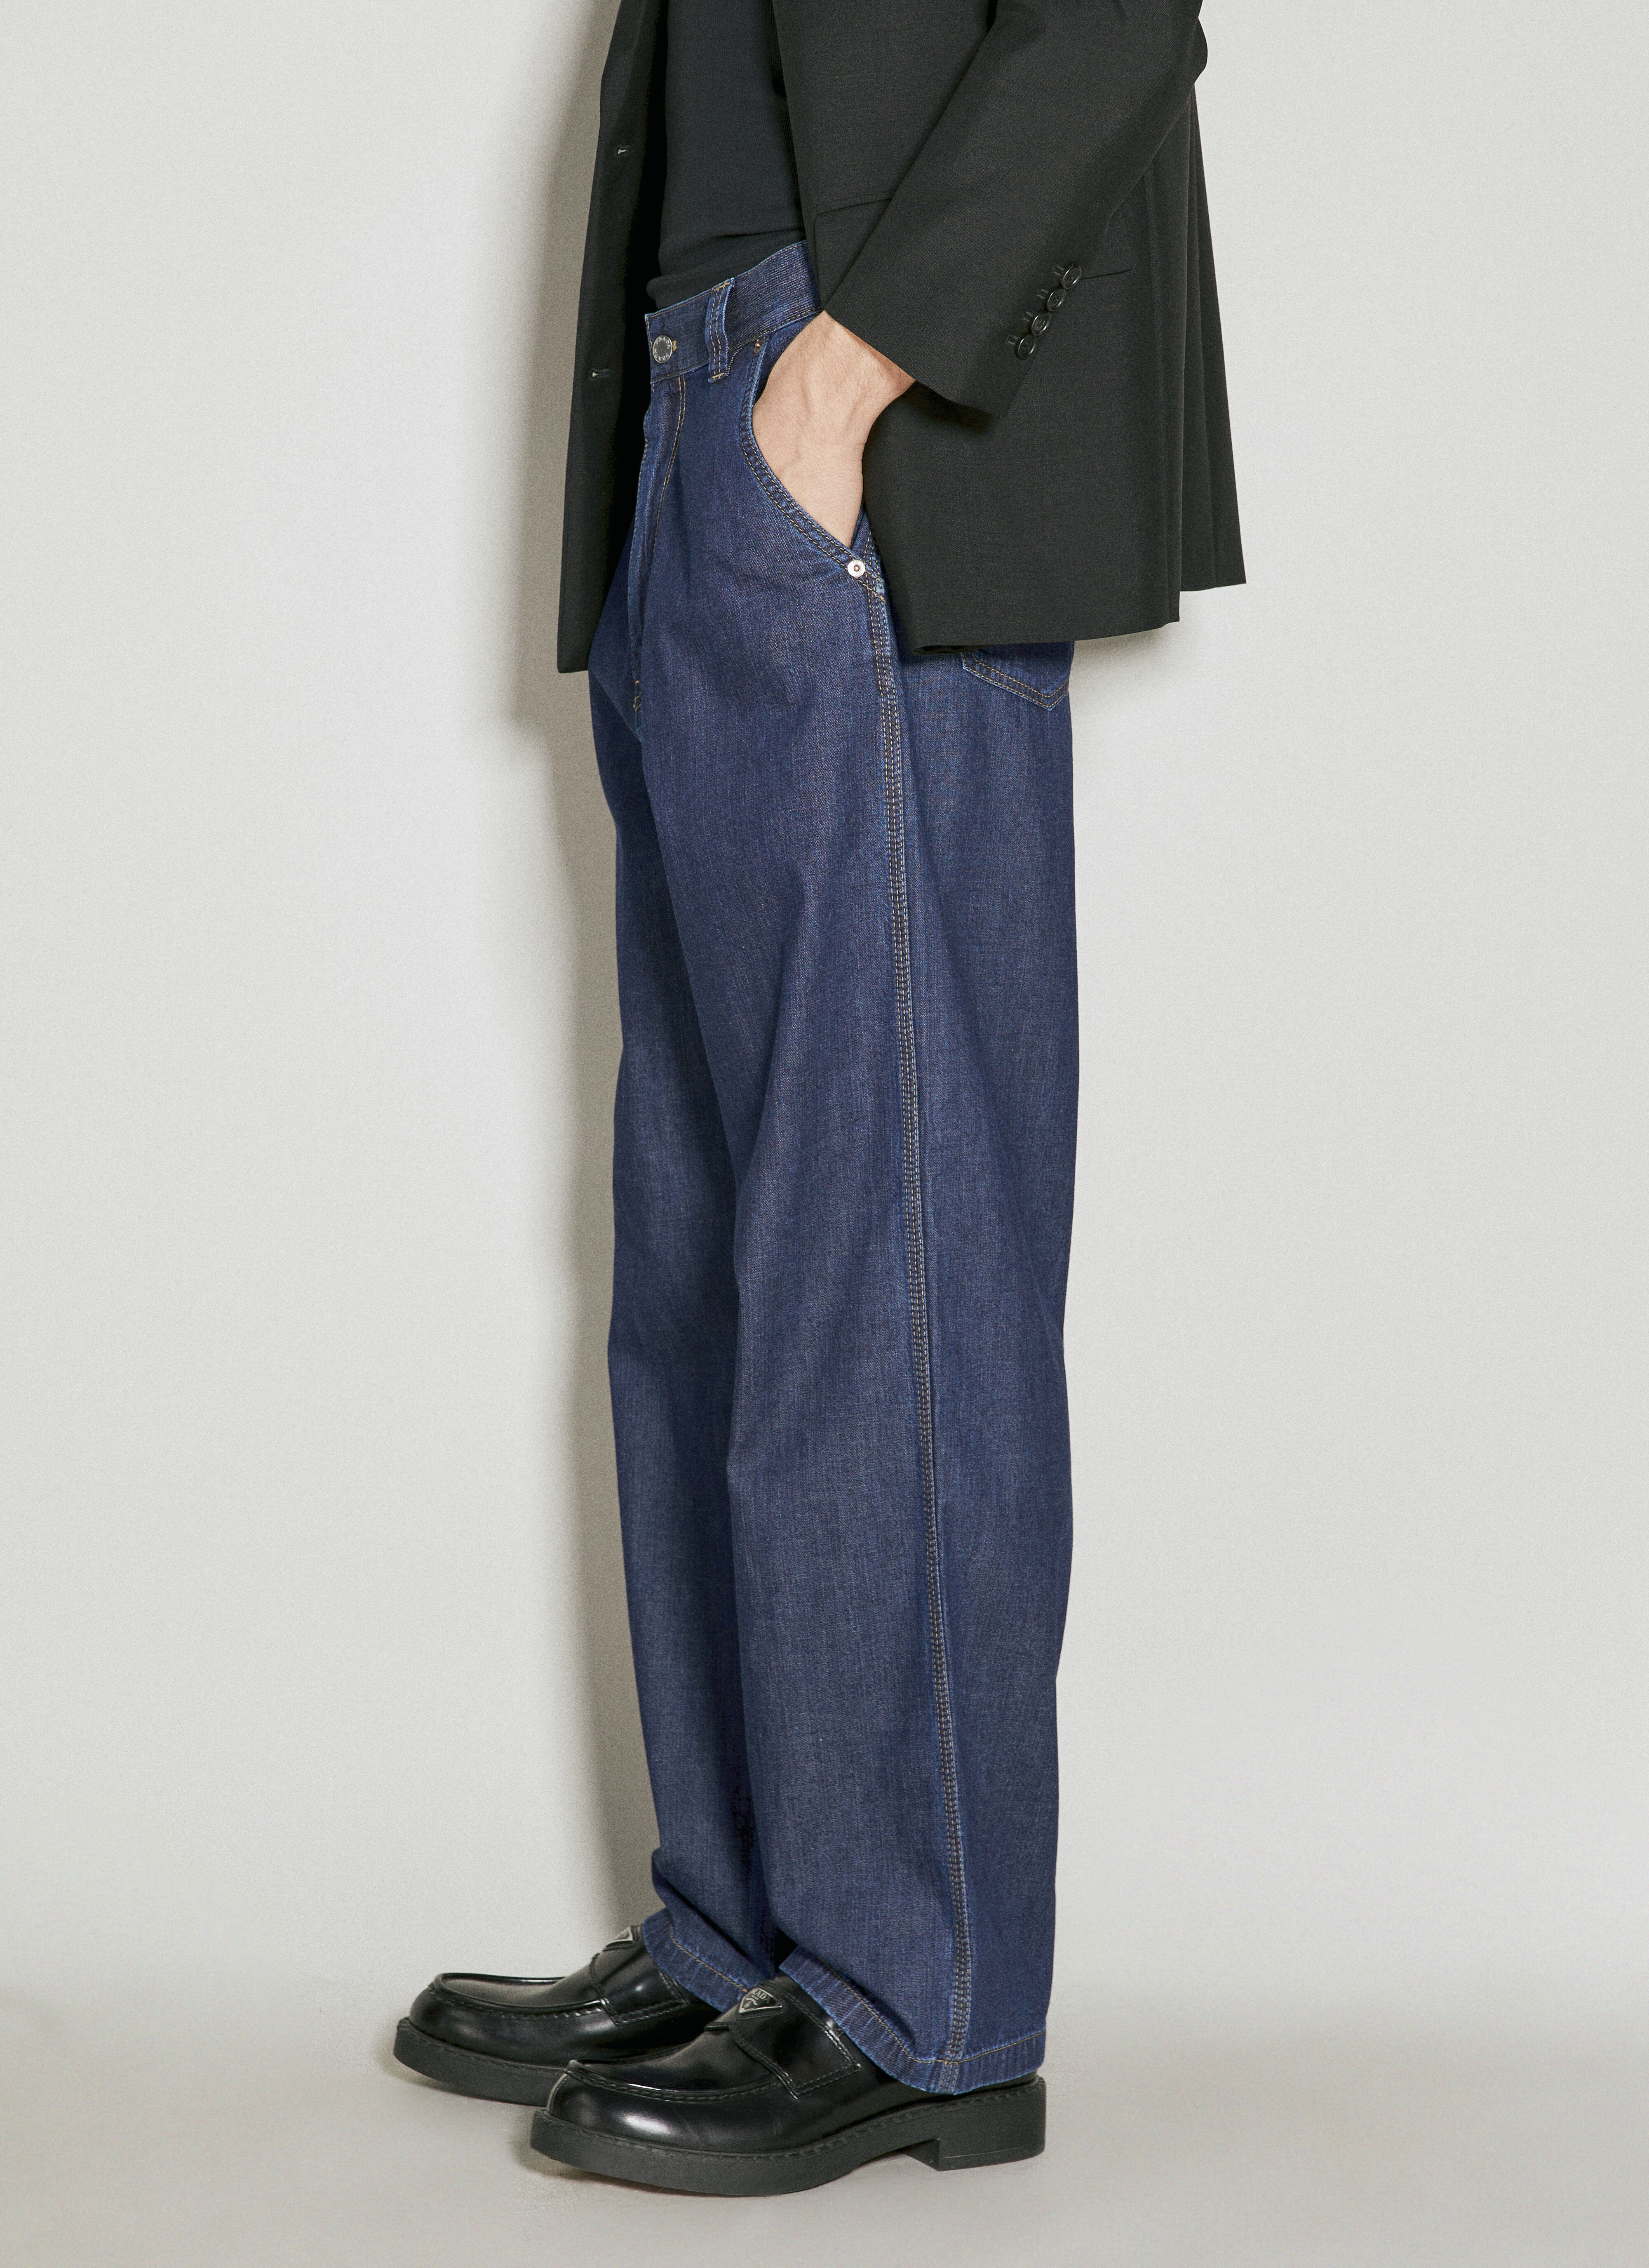 Vivienne Westwood 轻量牛仔裤 黑色 vvw0155001